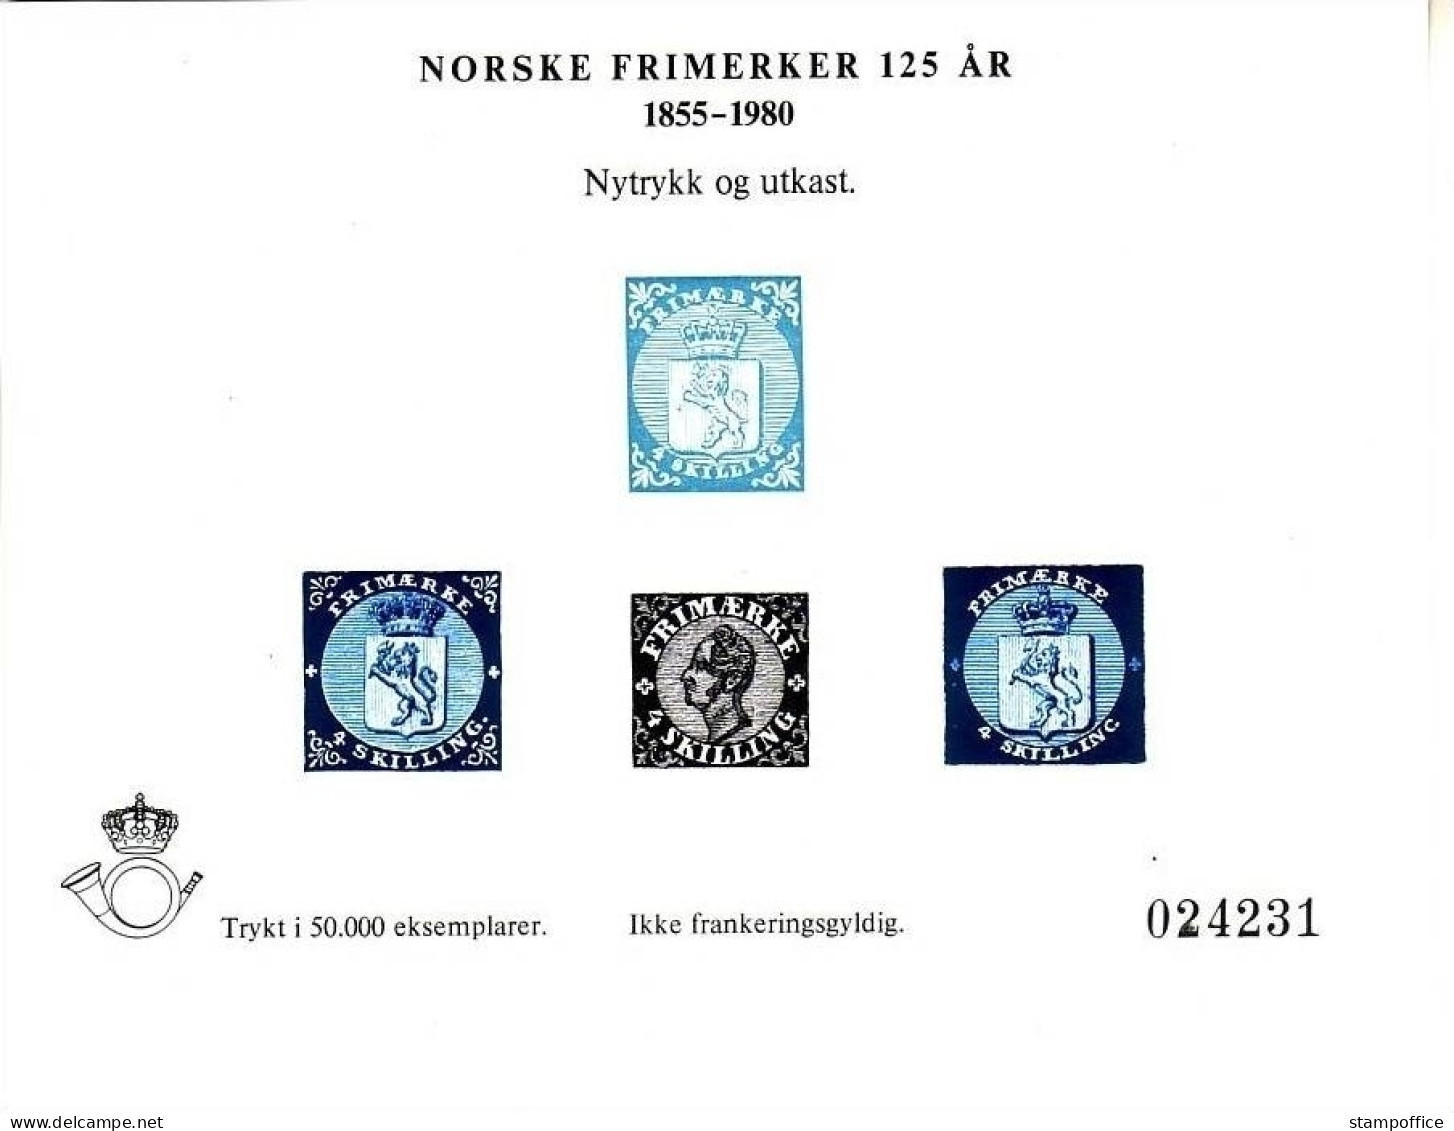 NORWEGEN NORSKE FRIMERKER 125 AR Probedruck 1980 - Proofs & Reprints